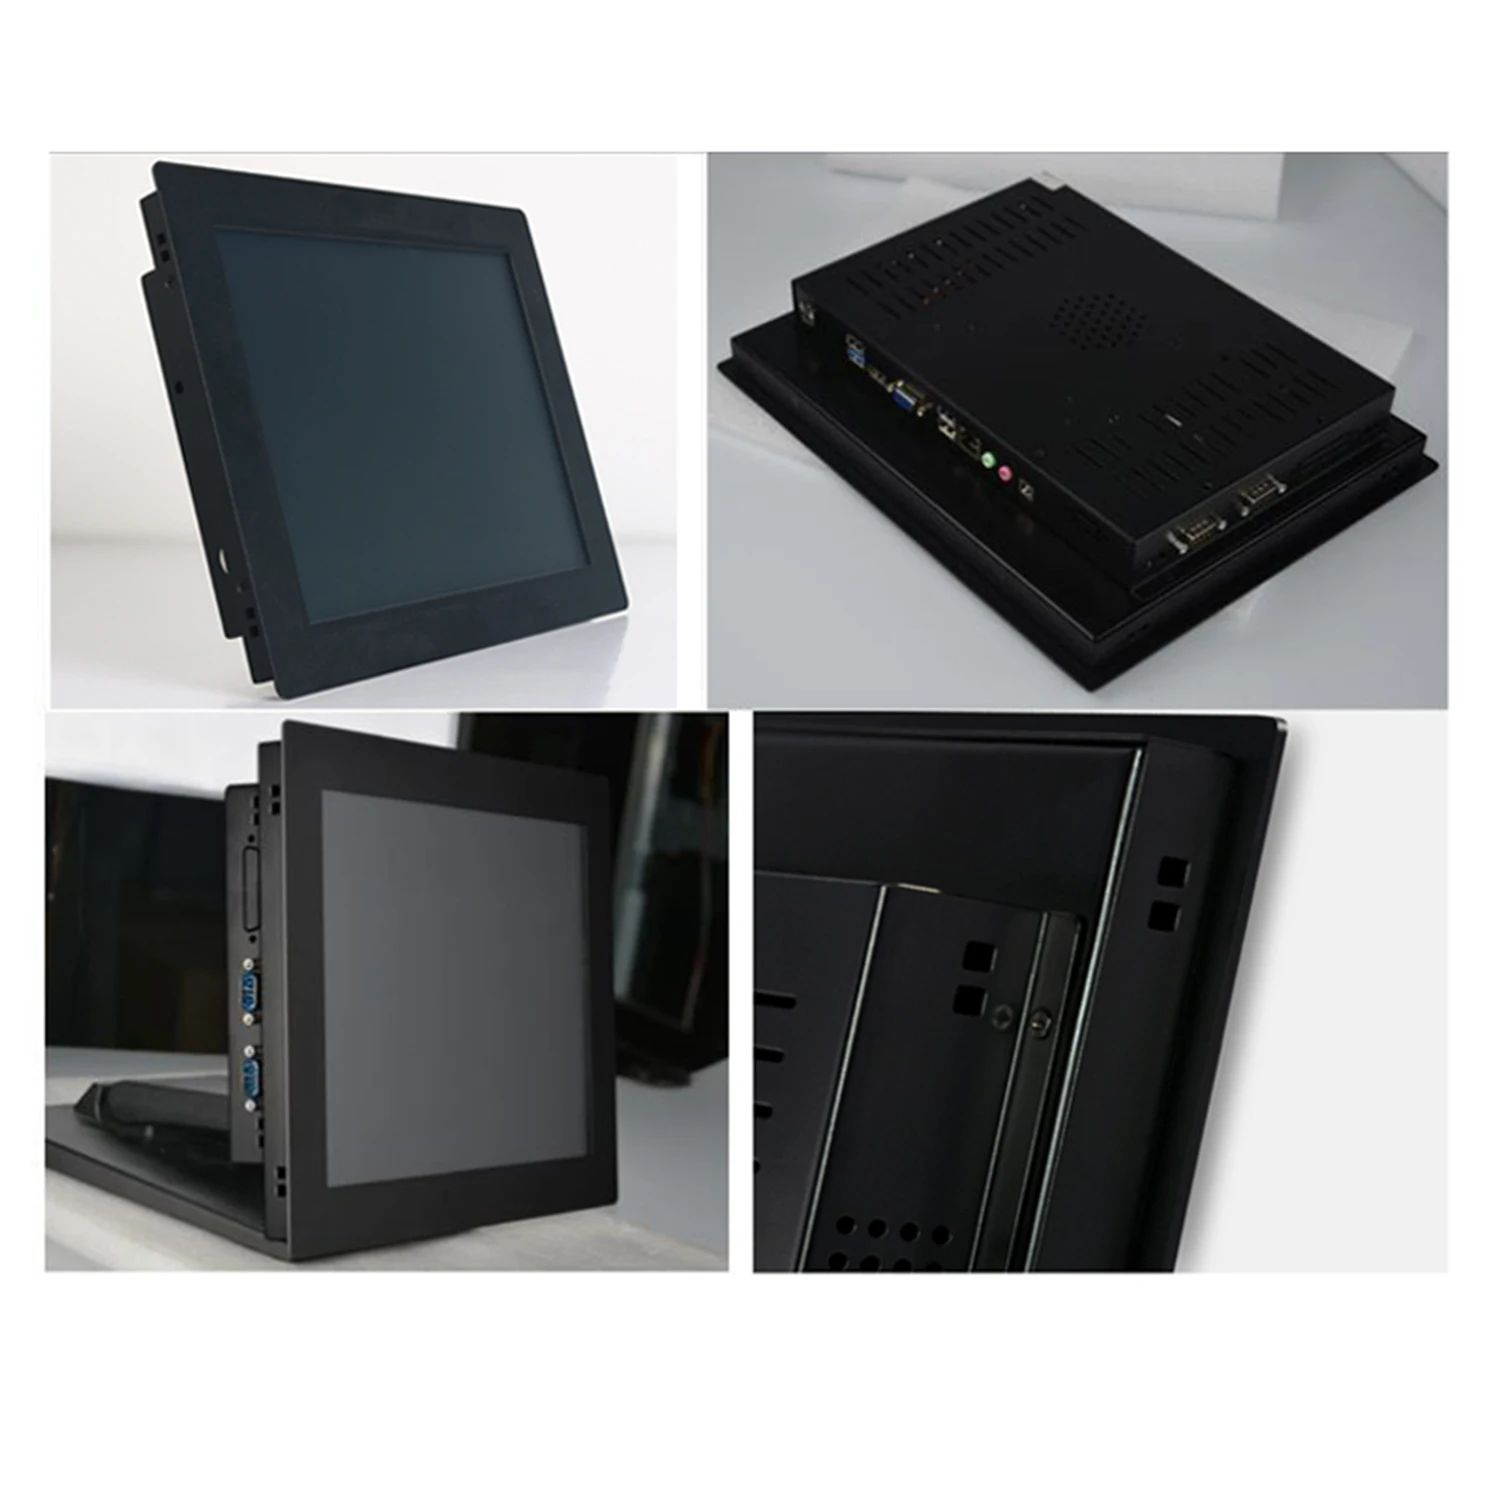 14 Inci Încorporat Mini Tableta All-in-one PC cu Ecran Tactil Rezistiv pentru Calculator Industrial cu RS232 COM pentru Win10 Pro4